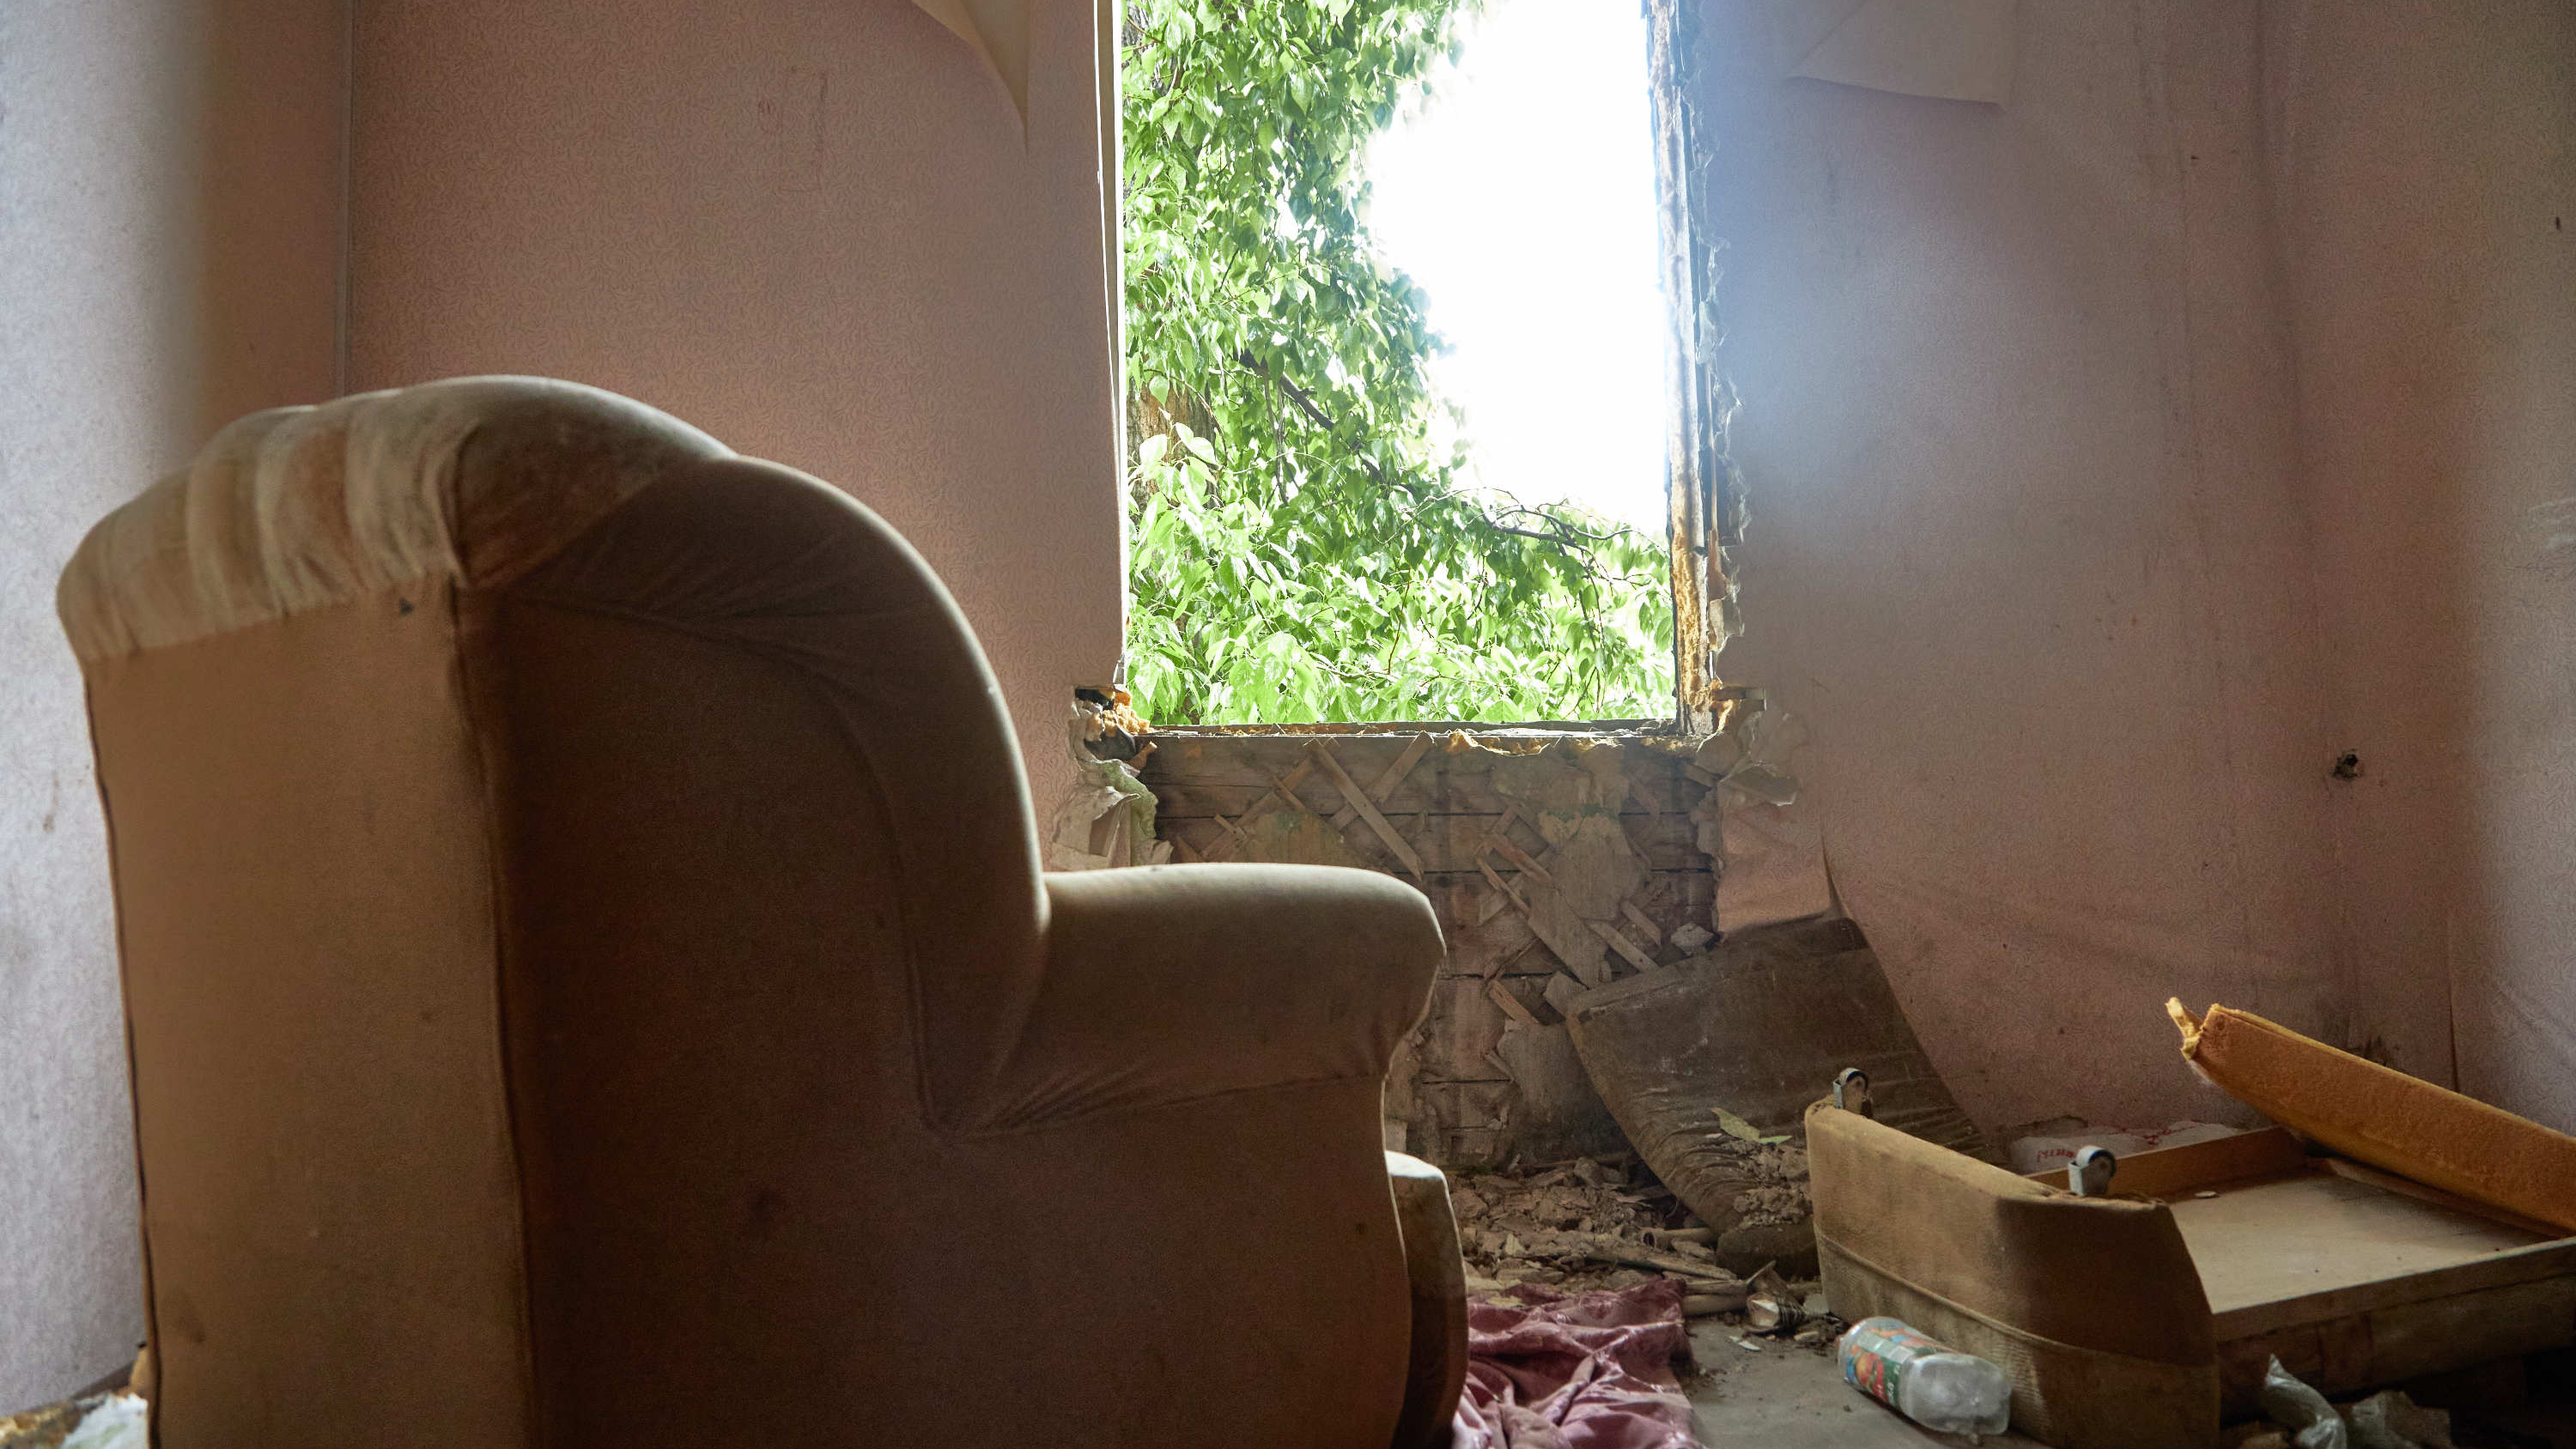 Мебель и унитазы среди руин: показываем секреты заброшенных бараков за Парком металлургов